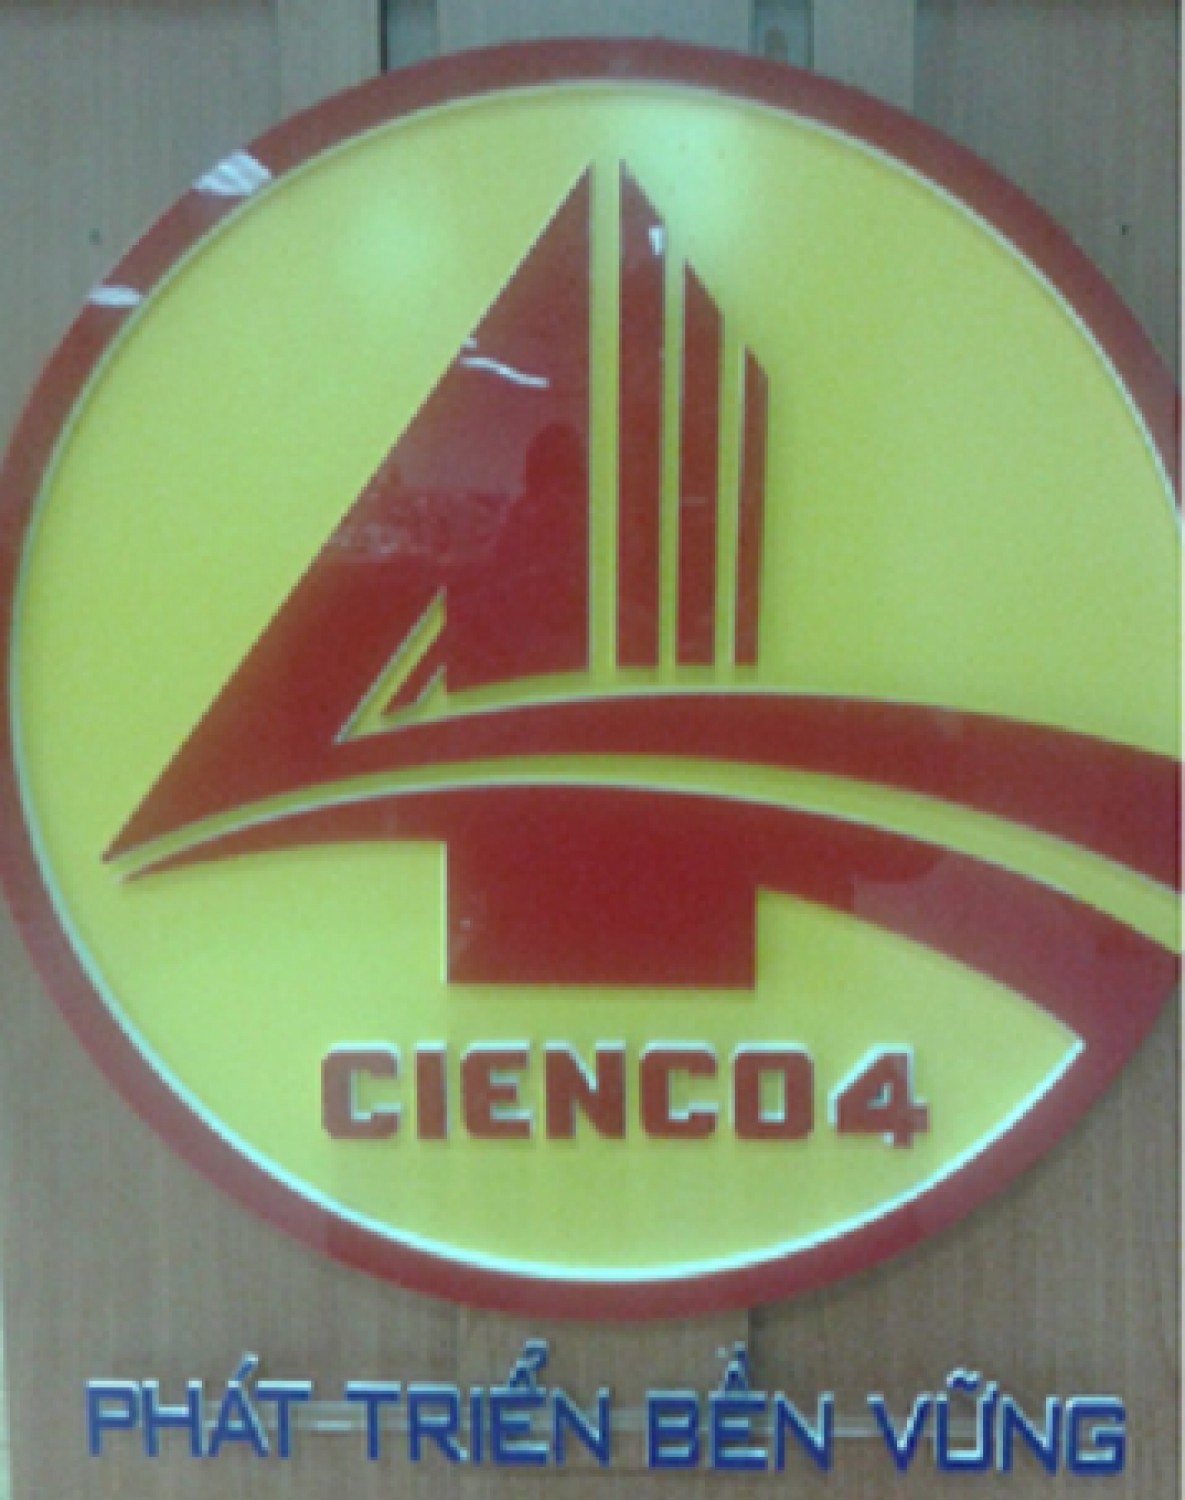 Nhận diện thương hiệu hiện đại và ấn tượng của Cienco4